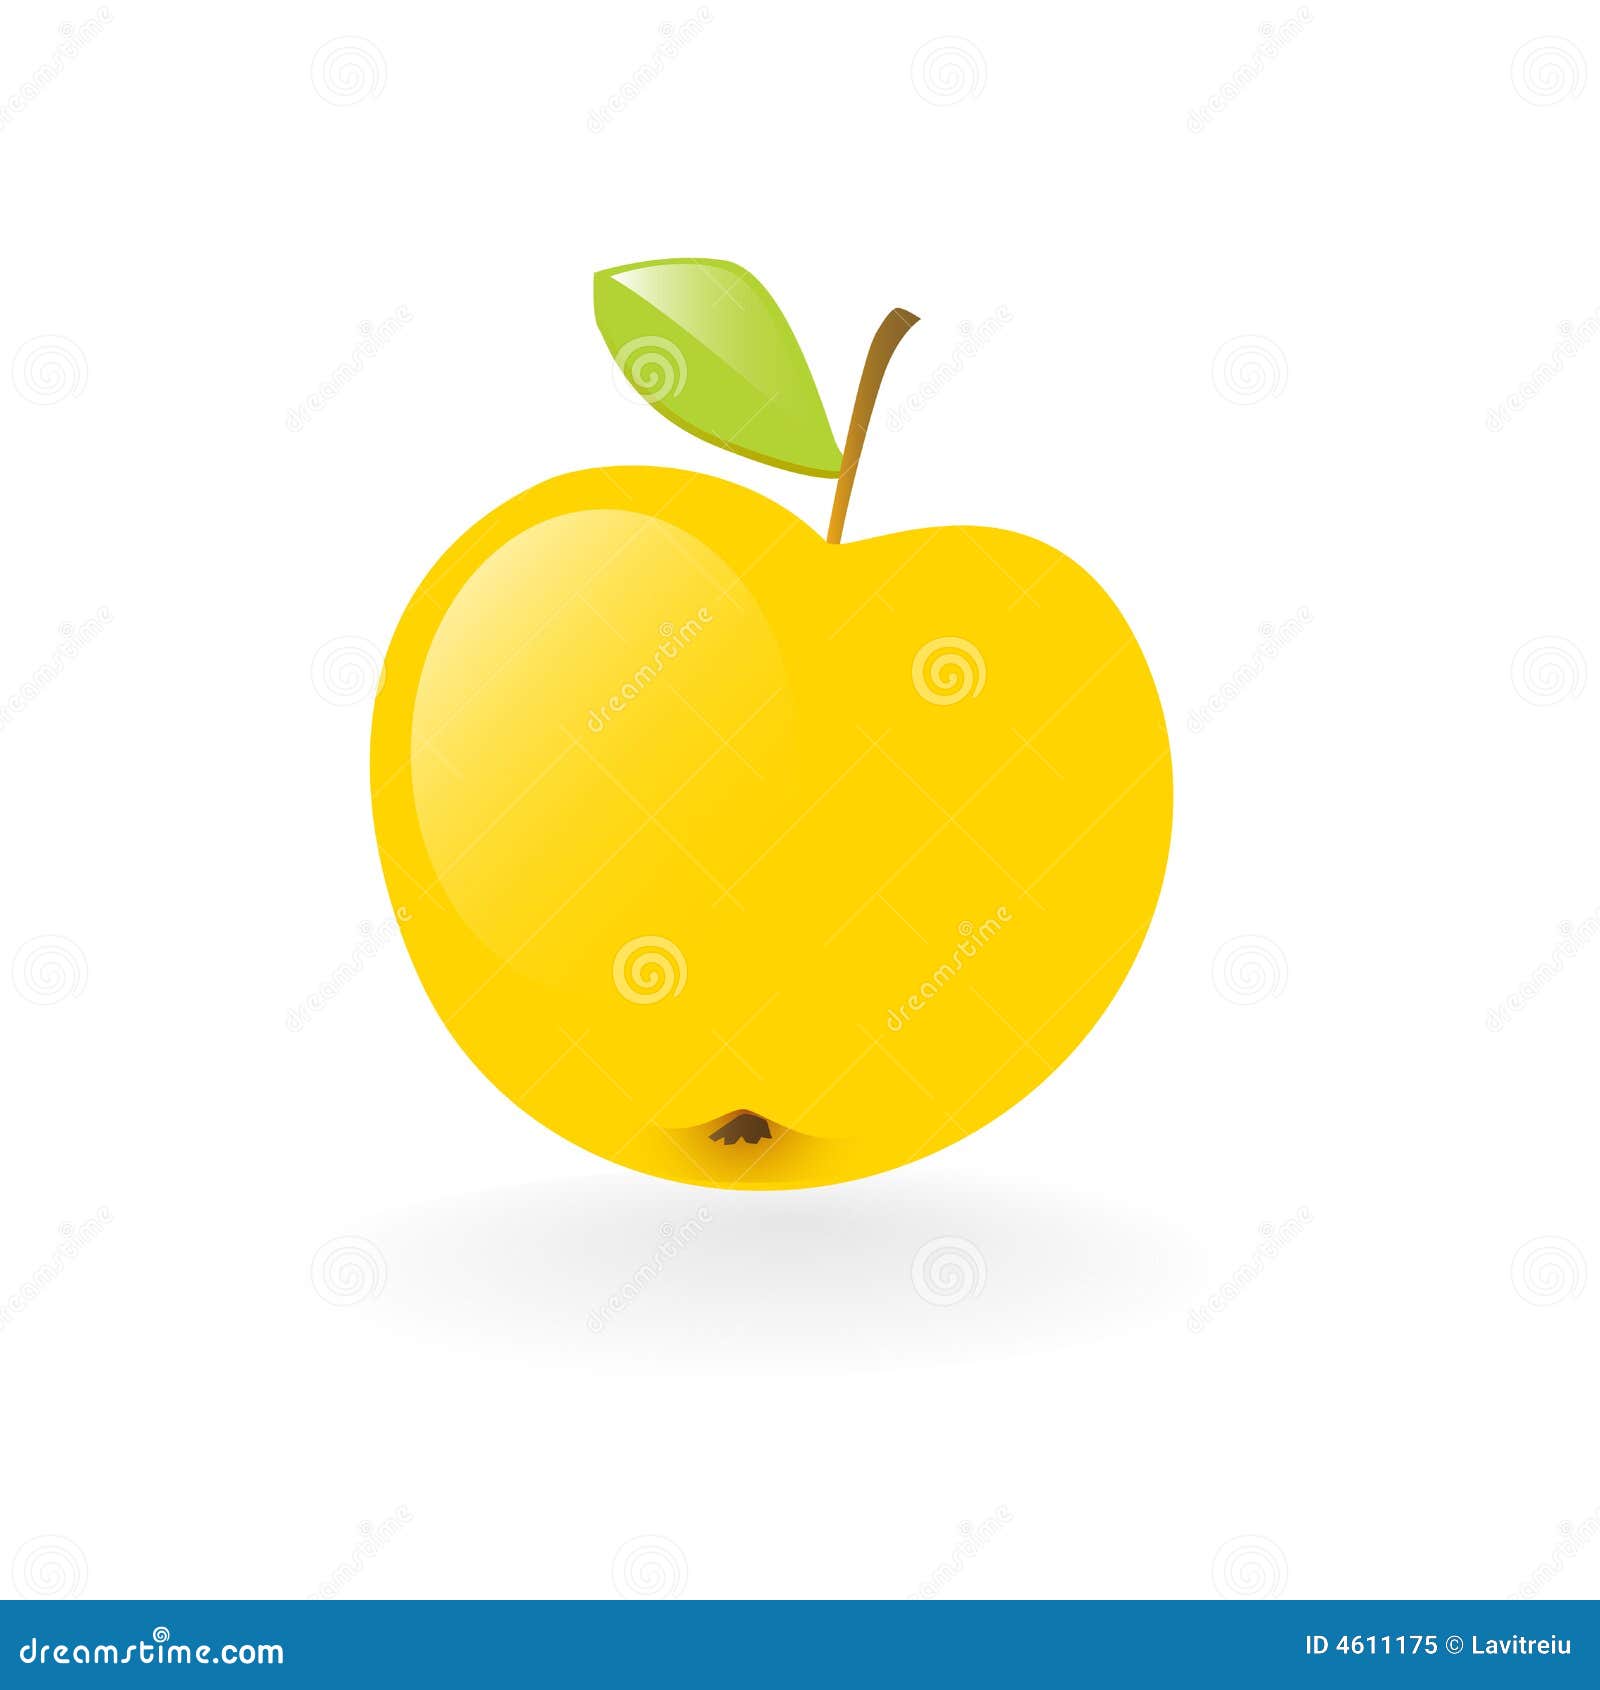 Яблоко желтое мультяшное на белом фоне